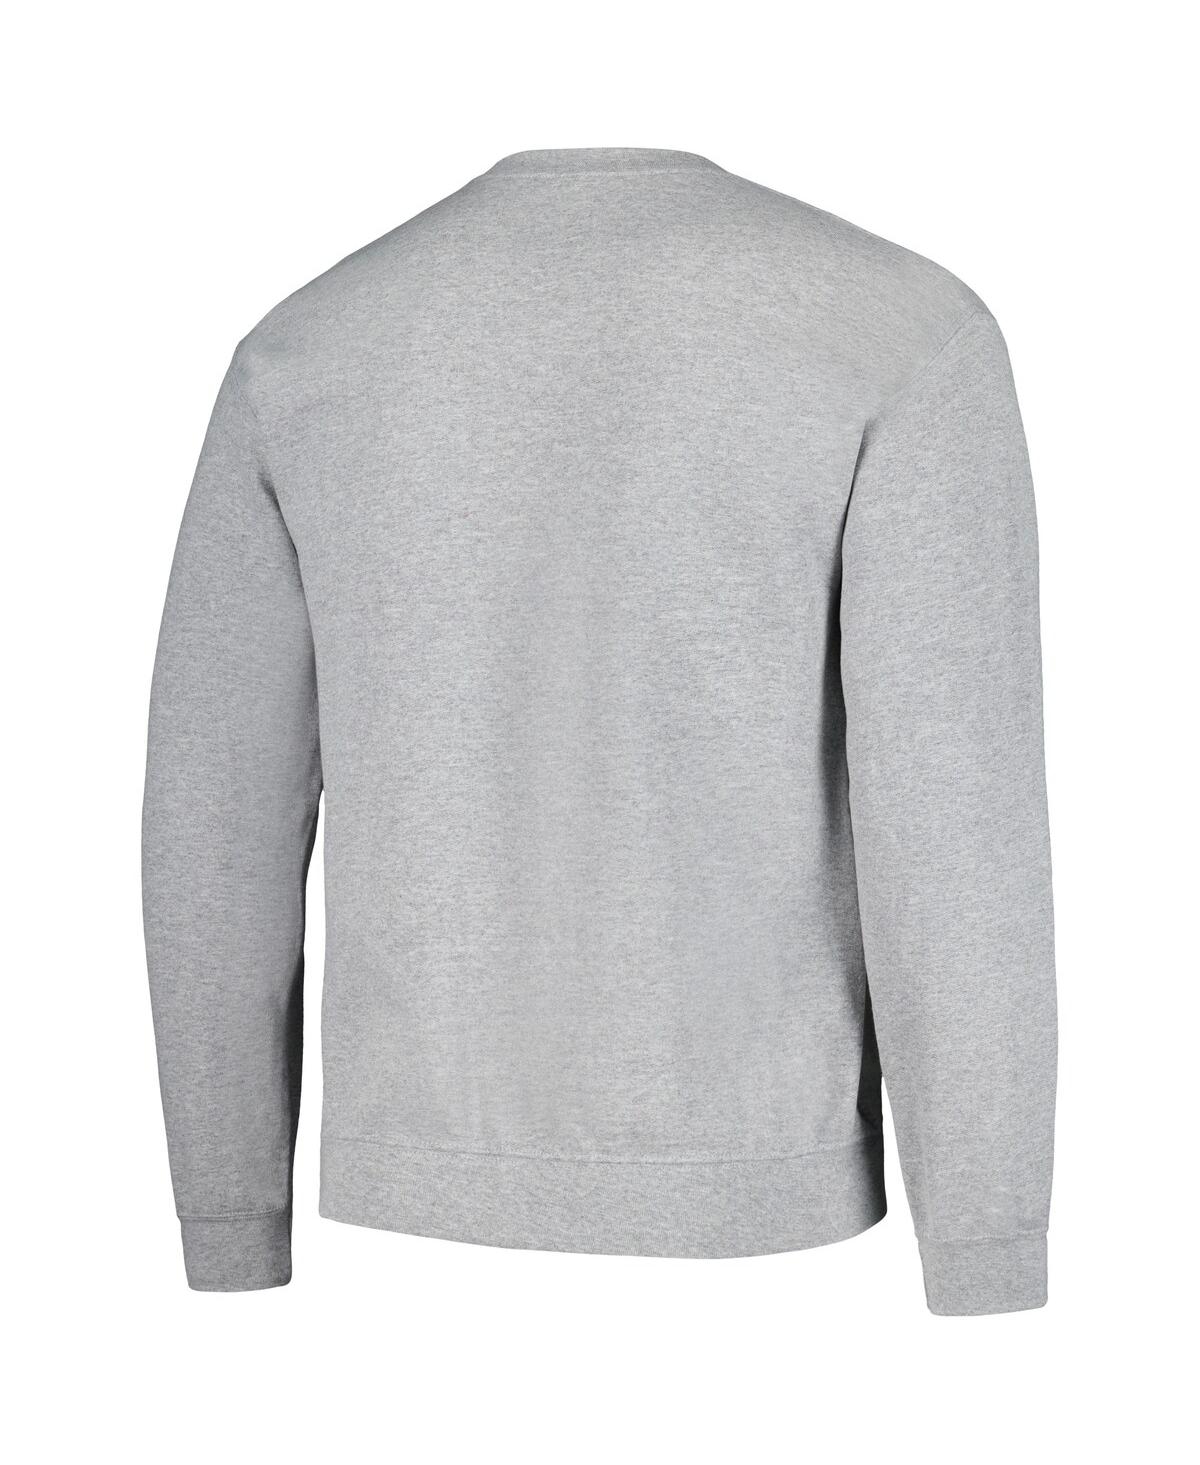 Shop Ripple Junction Men's And Women's  Heather Gray Attack On Titan Graphic Fleece Sweatshirt